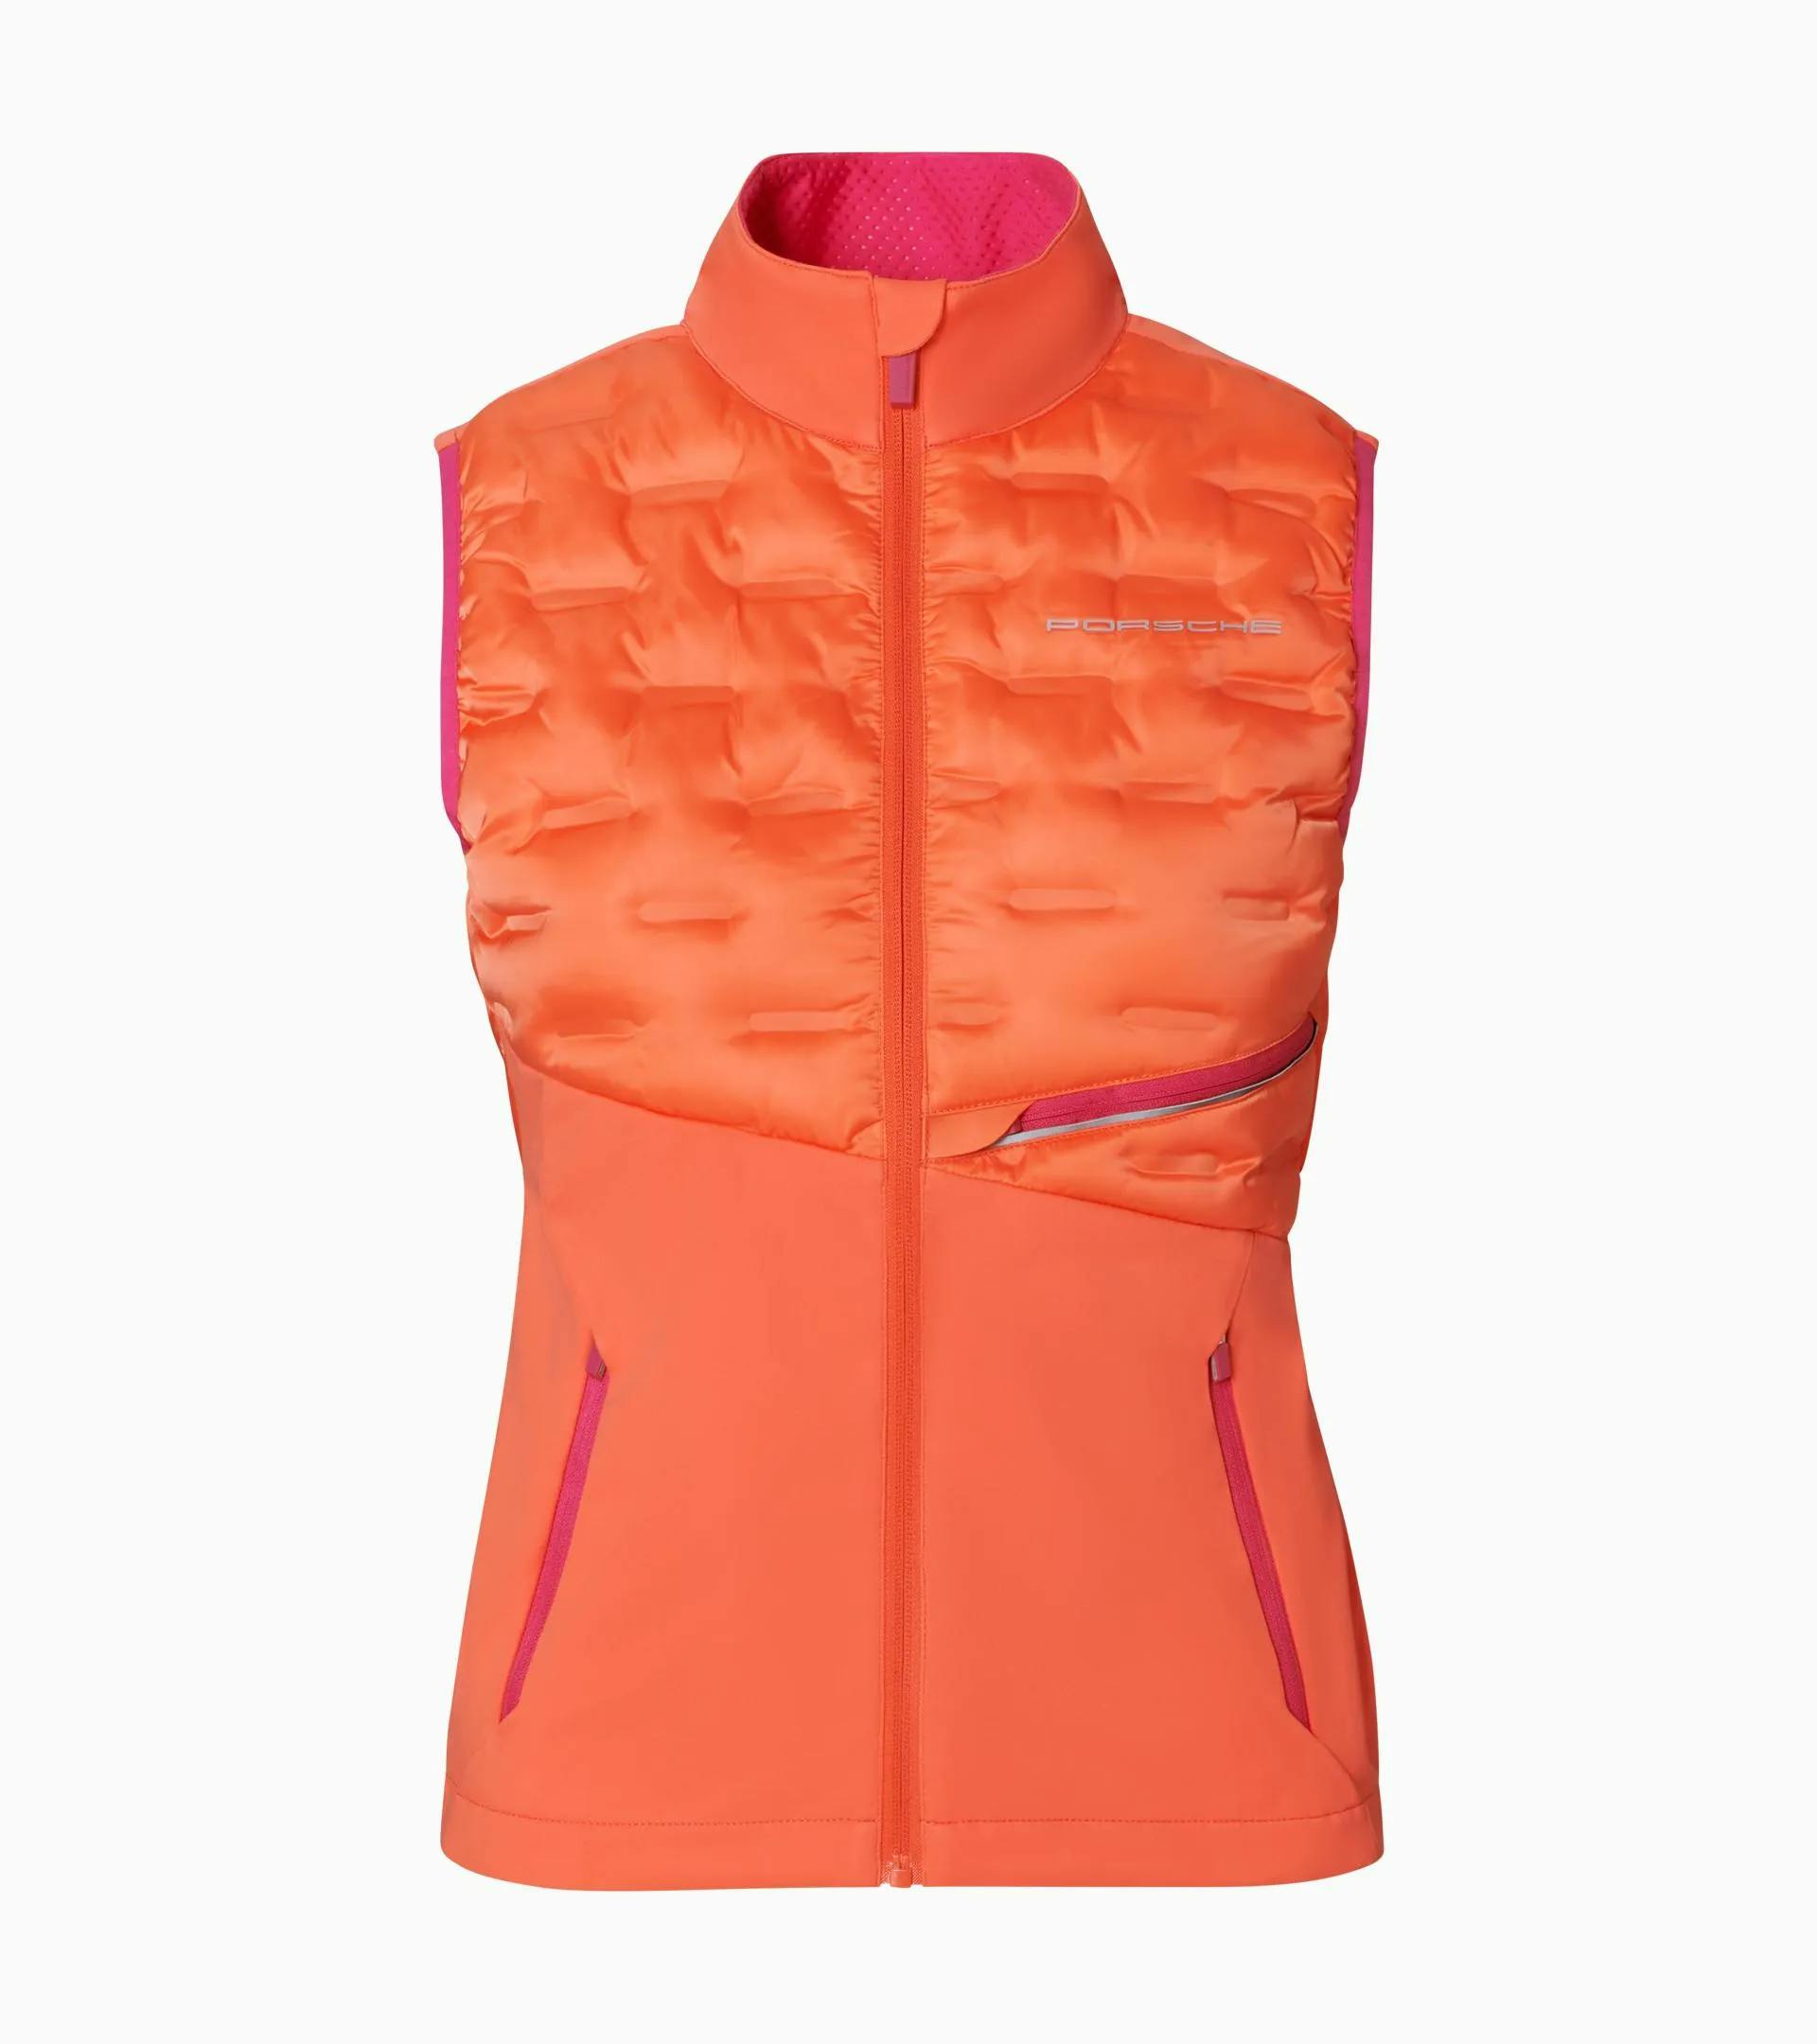 Women's vest – Sport 1